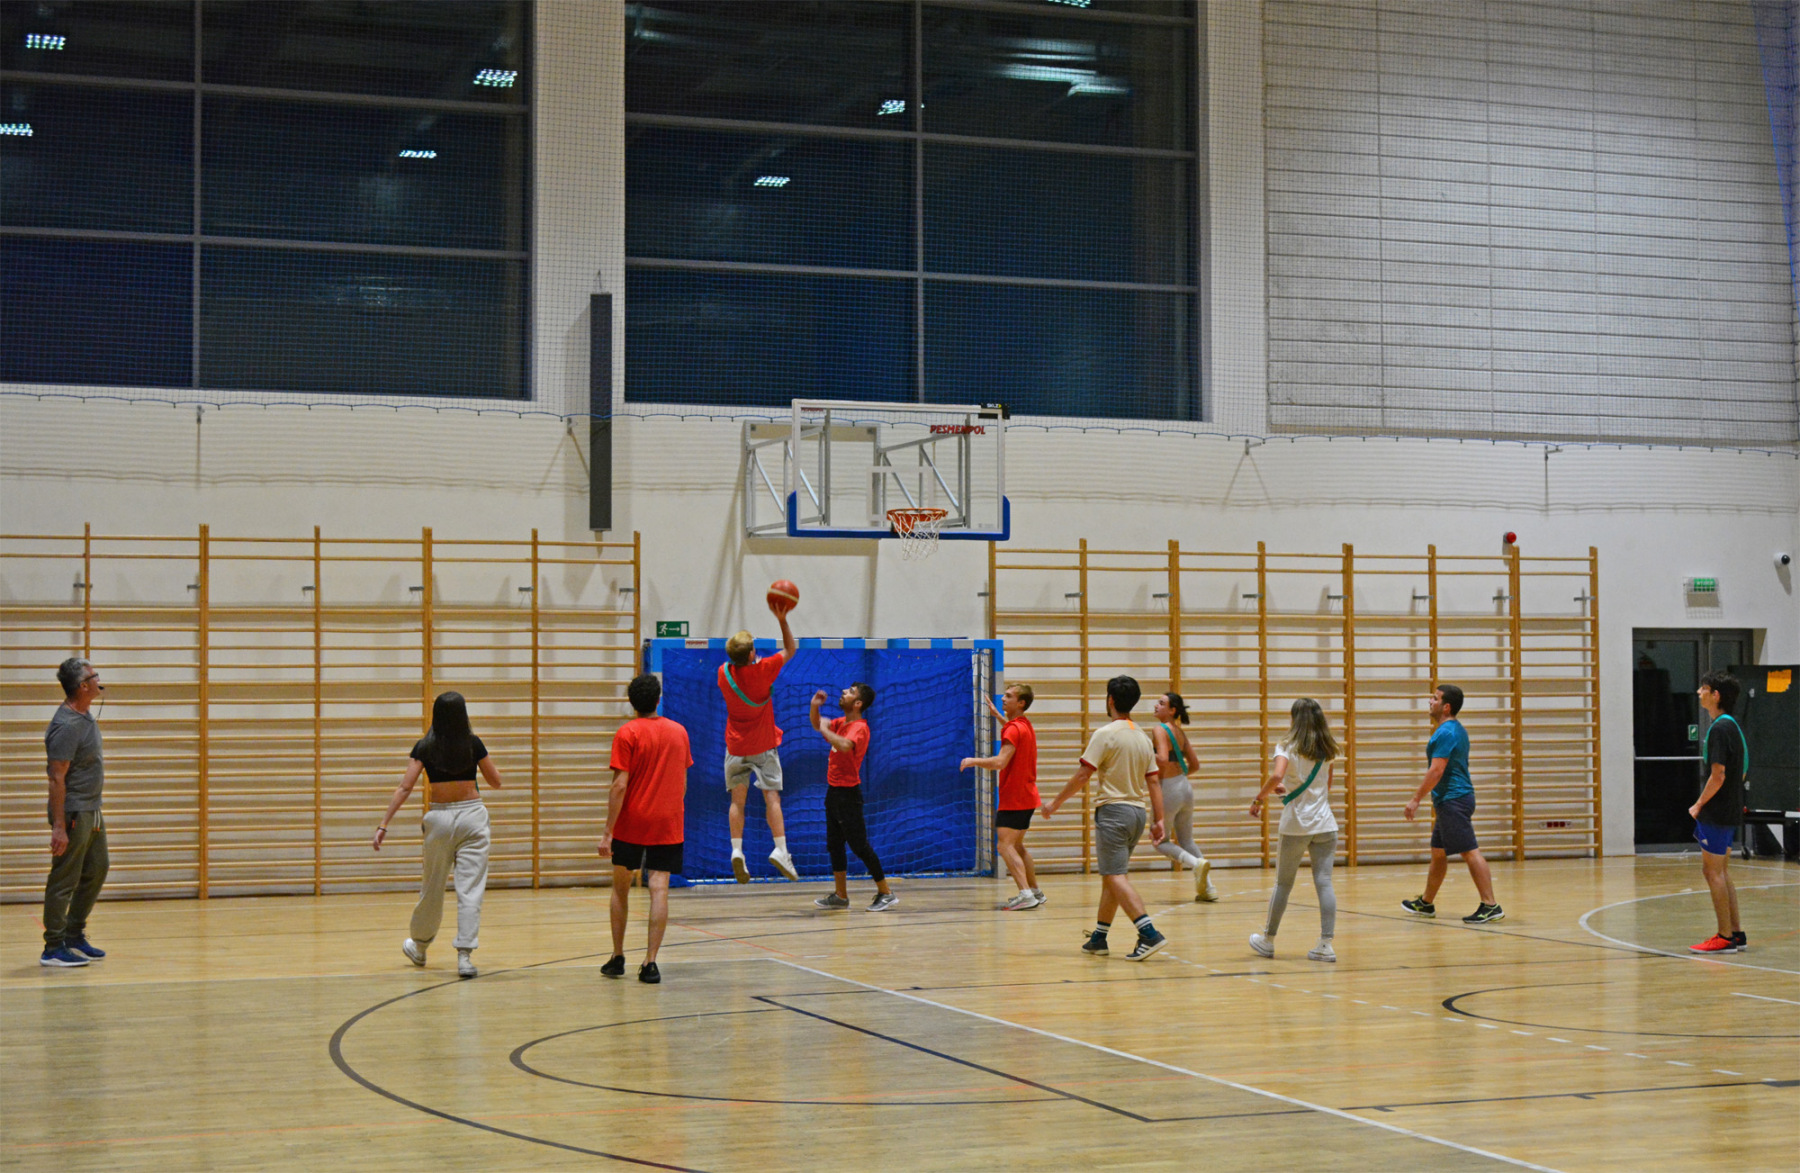 Grupa studentów gra w koszykówkę na hali sportowej.